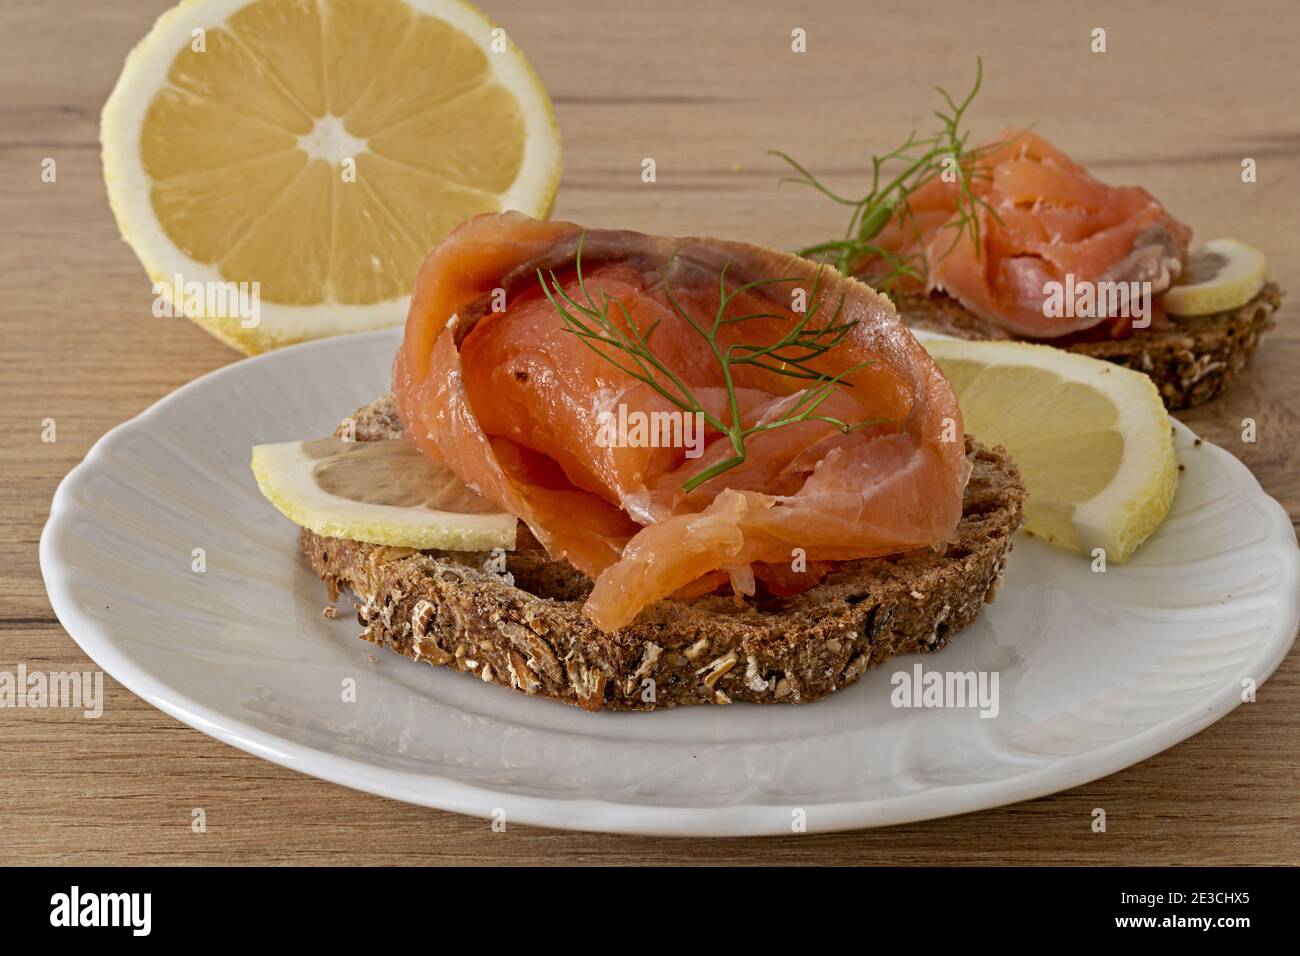 due fette di pane rustico con salmone affumicato con limone Banque D'Images